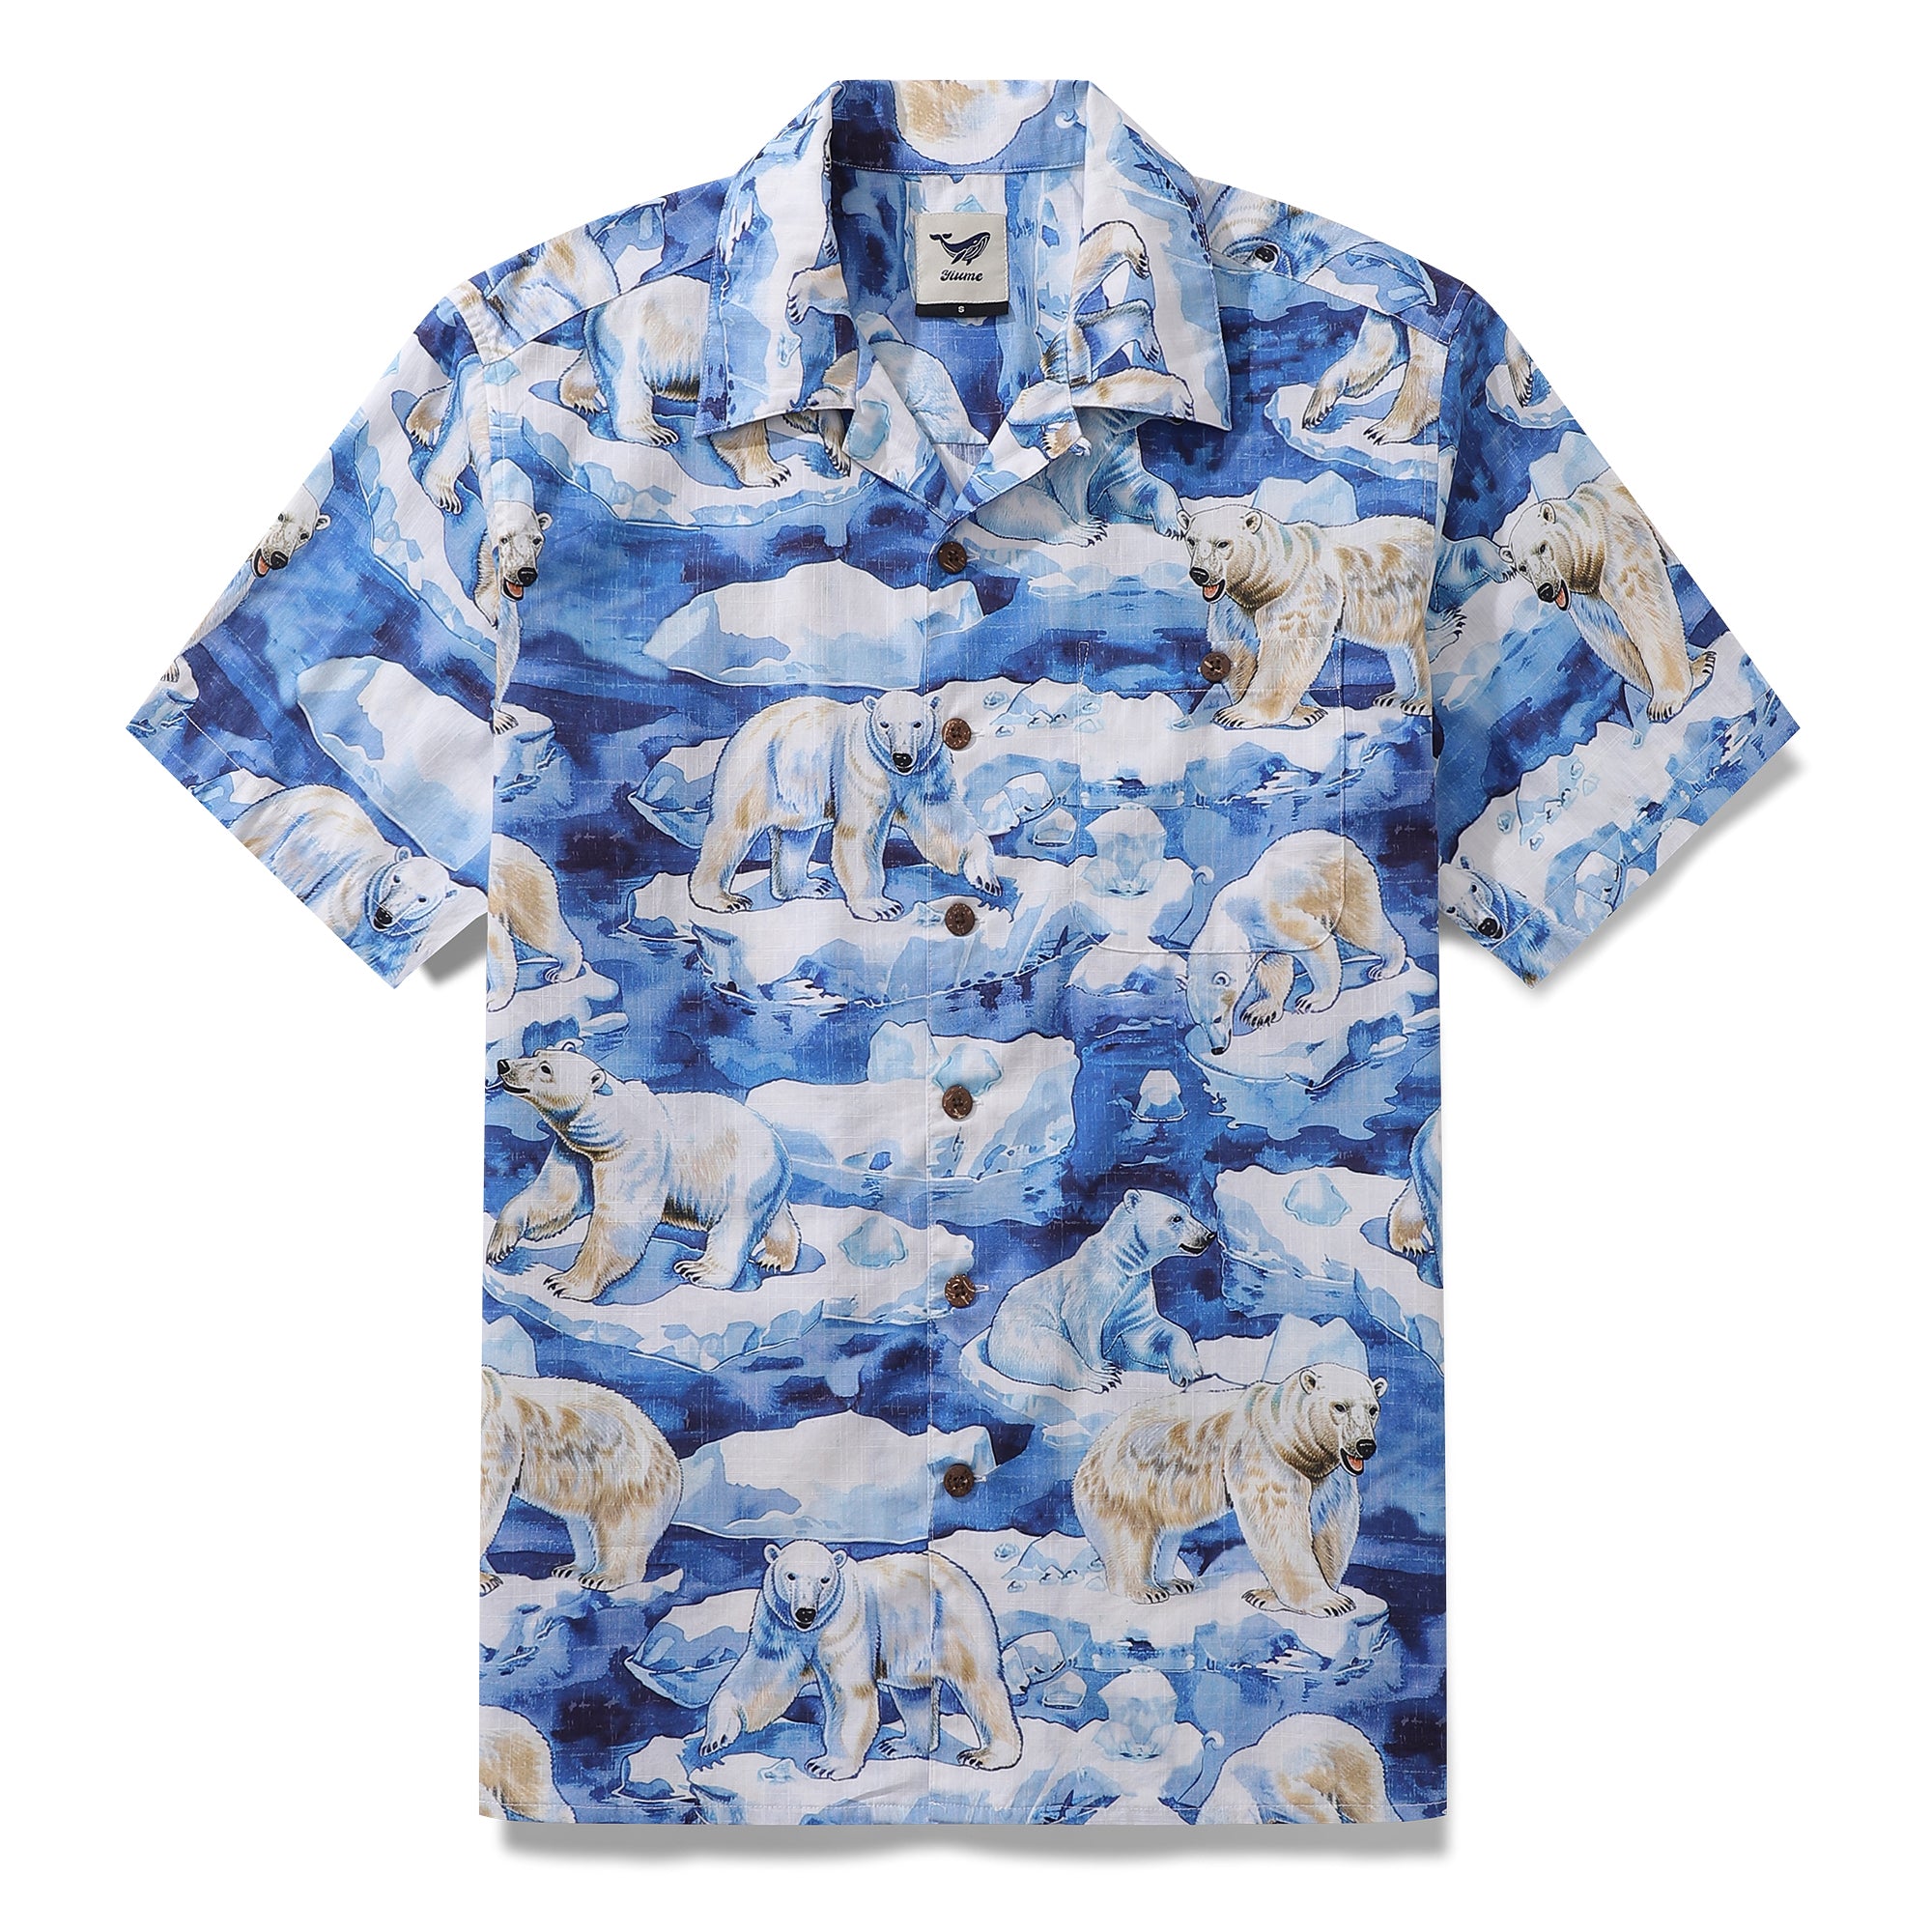 Hawaiian Shirt For Men Melting Away Print Shirt Camp Collar 100% Cotton